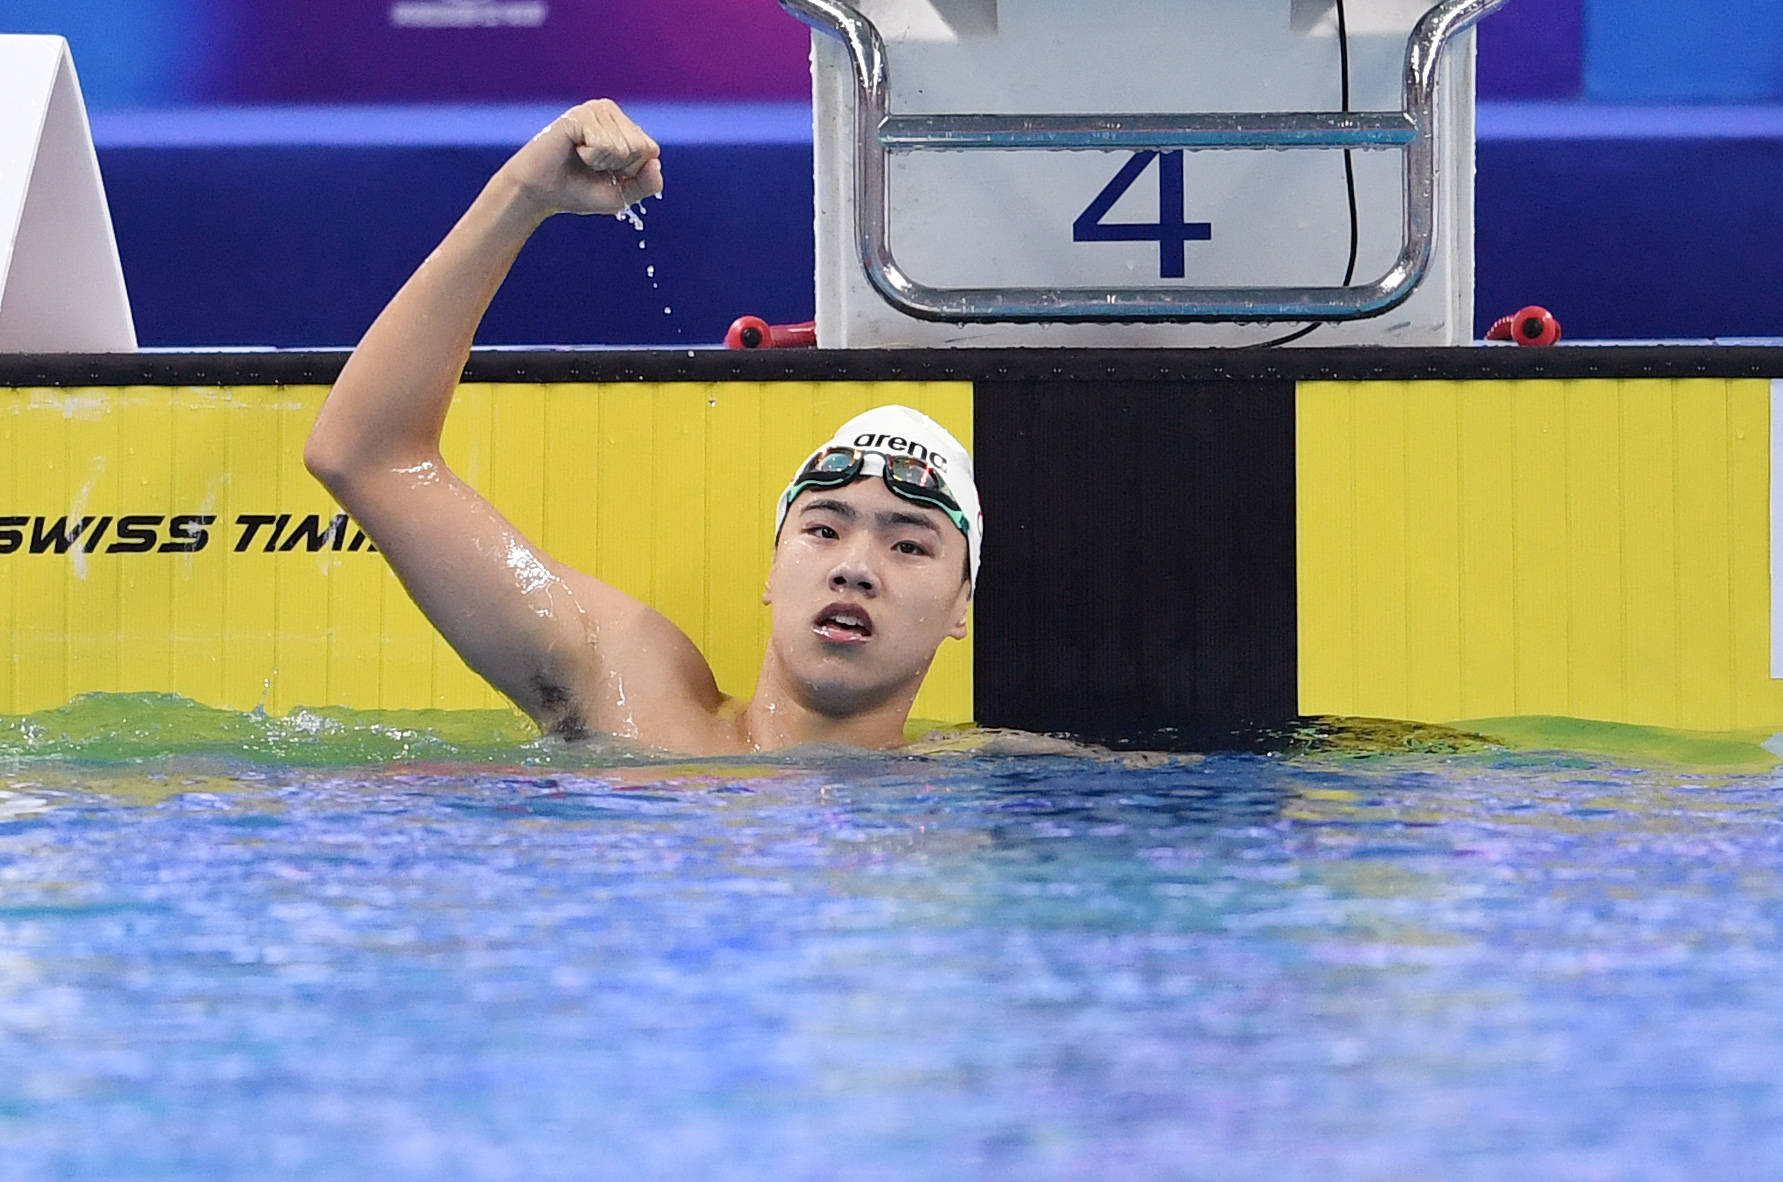 游泳——全国冠军赛:男子u15 200米个人混合泳决赛赛况_手机搜狐网